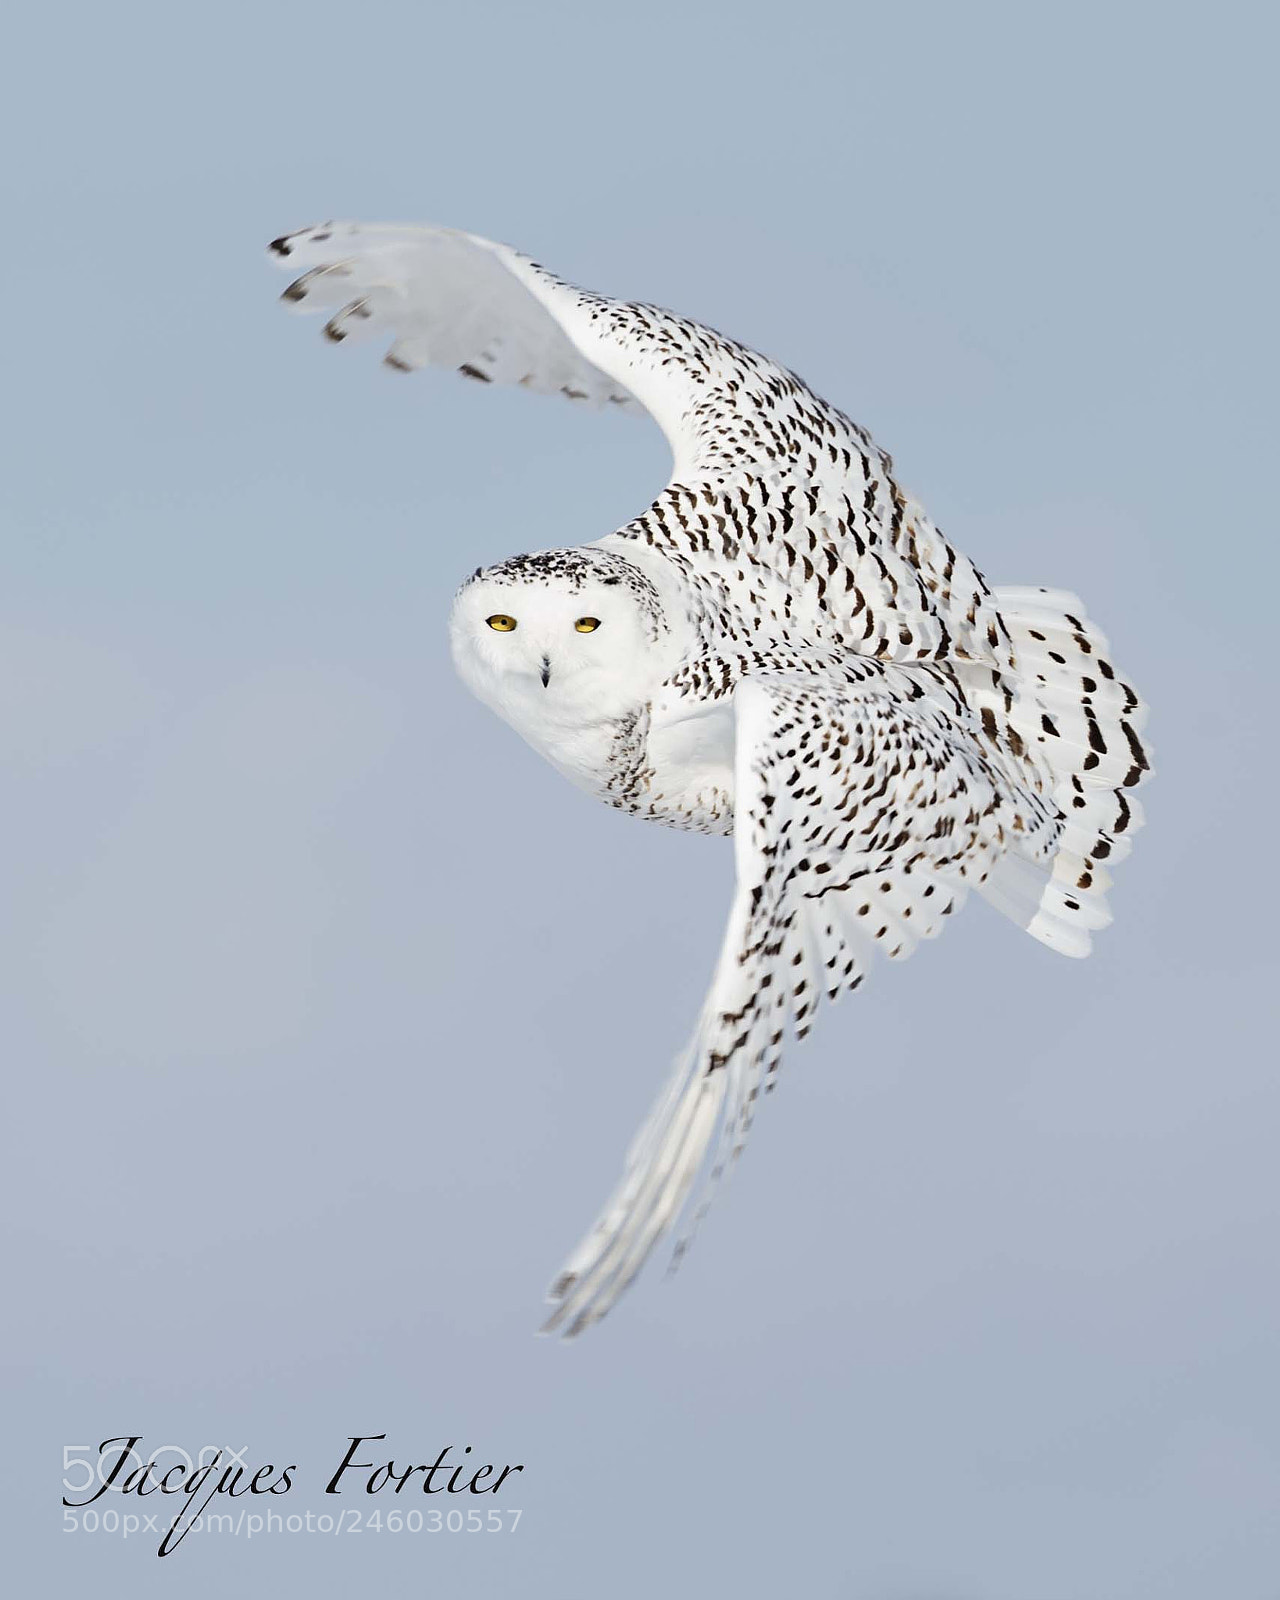 Canon EOS-1D X sample photo. Snowy owl photography